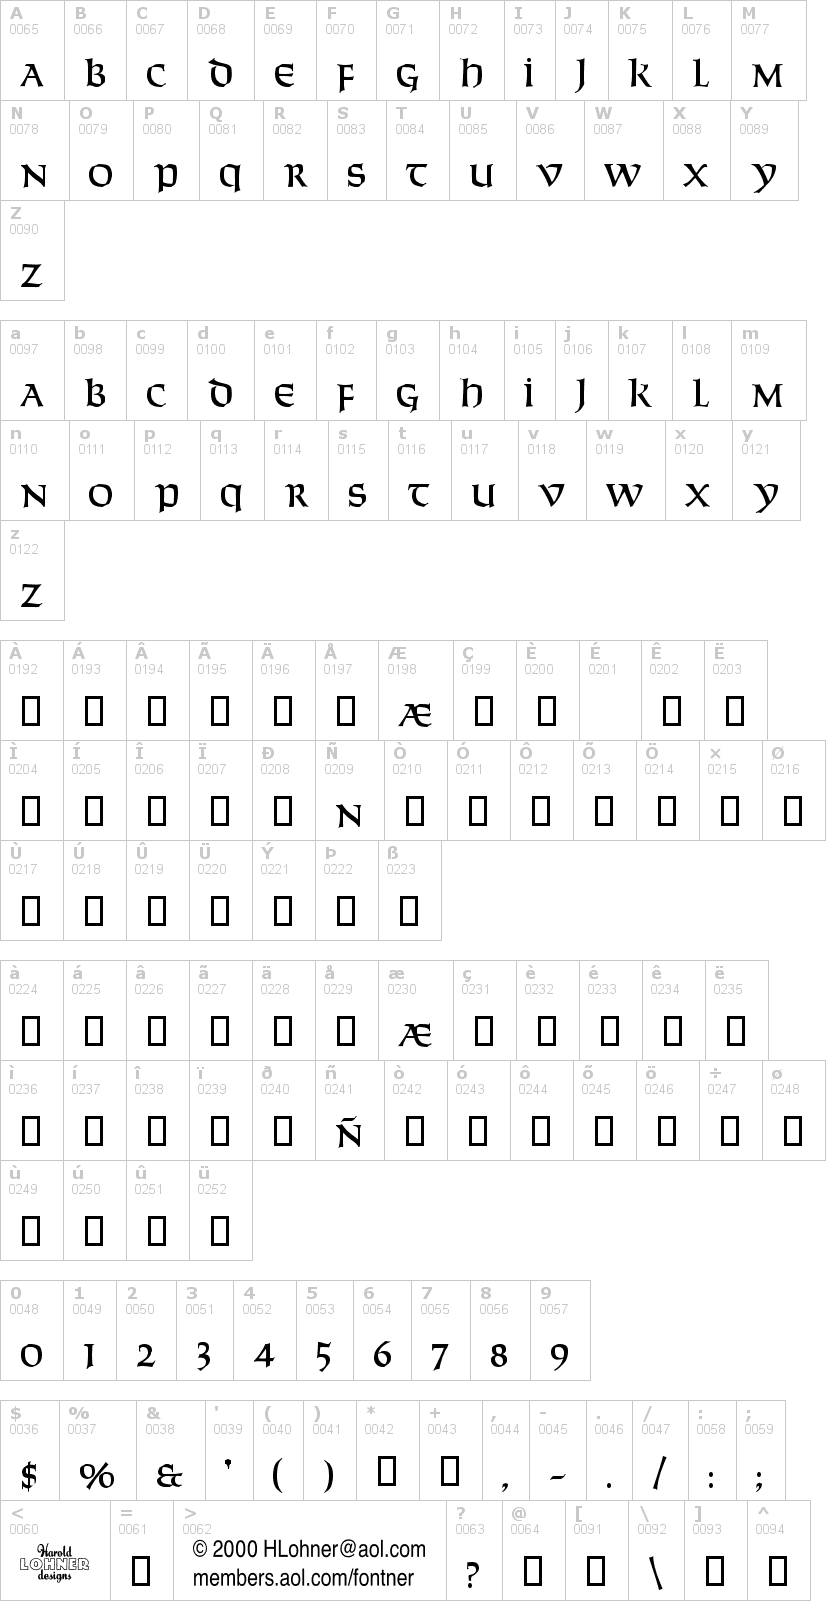 Lettere dell'alfabeto del font solemnity con le quali è possibile realizzare adesivi prespaziati